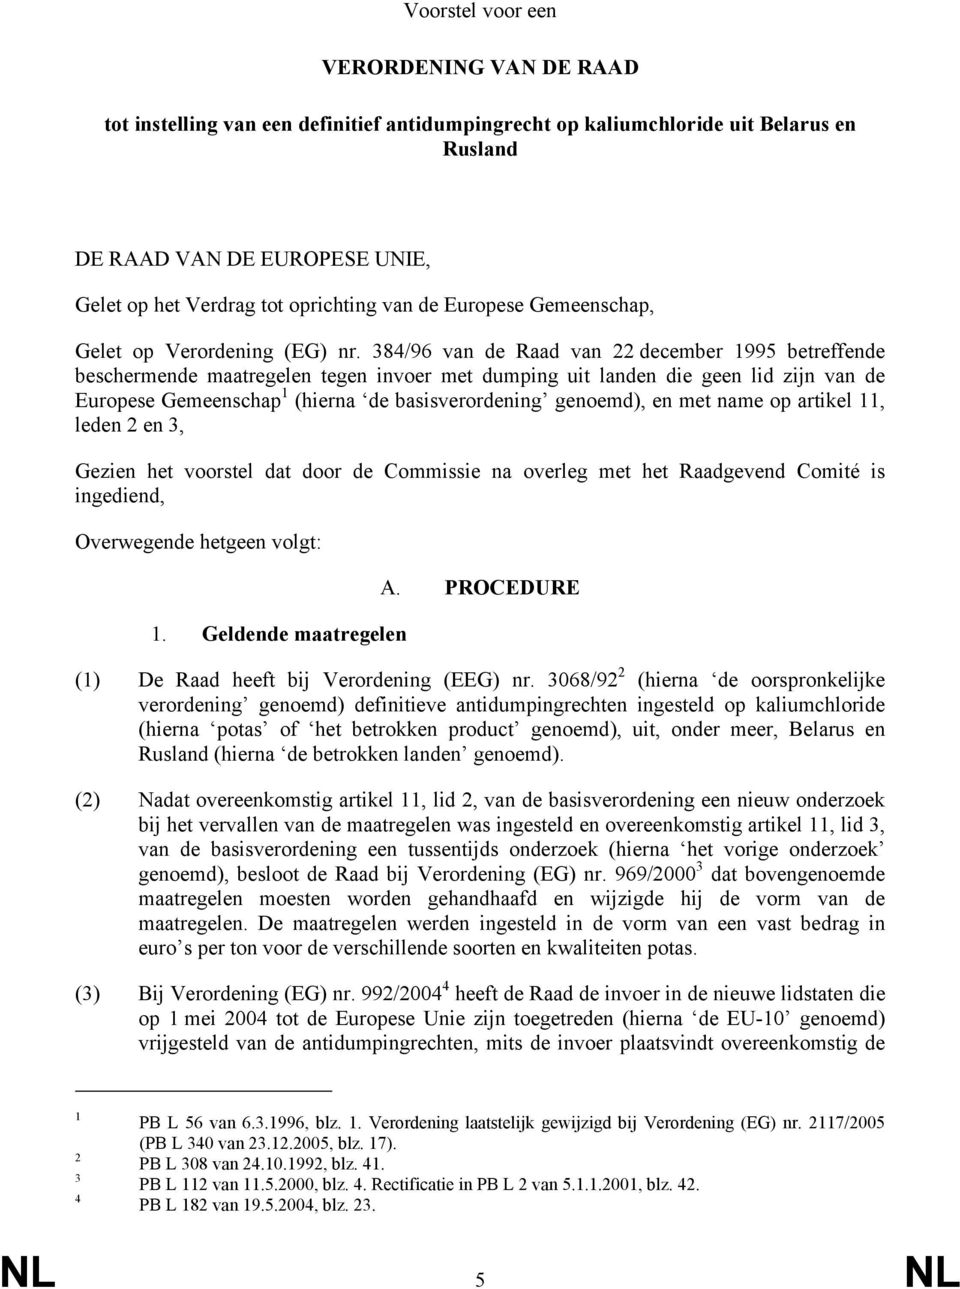 384/96 van de Raad van 22 december 1995 betreffende beschermende maatregelen tegen invoer met dumping uit landen die geen lid zijn van de Europese Gemeenschap 1 (hierna de basisverordening genoemd),